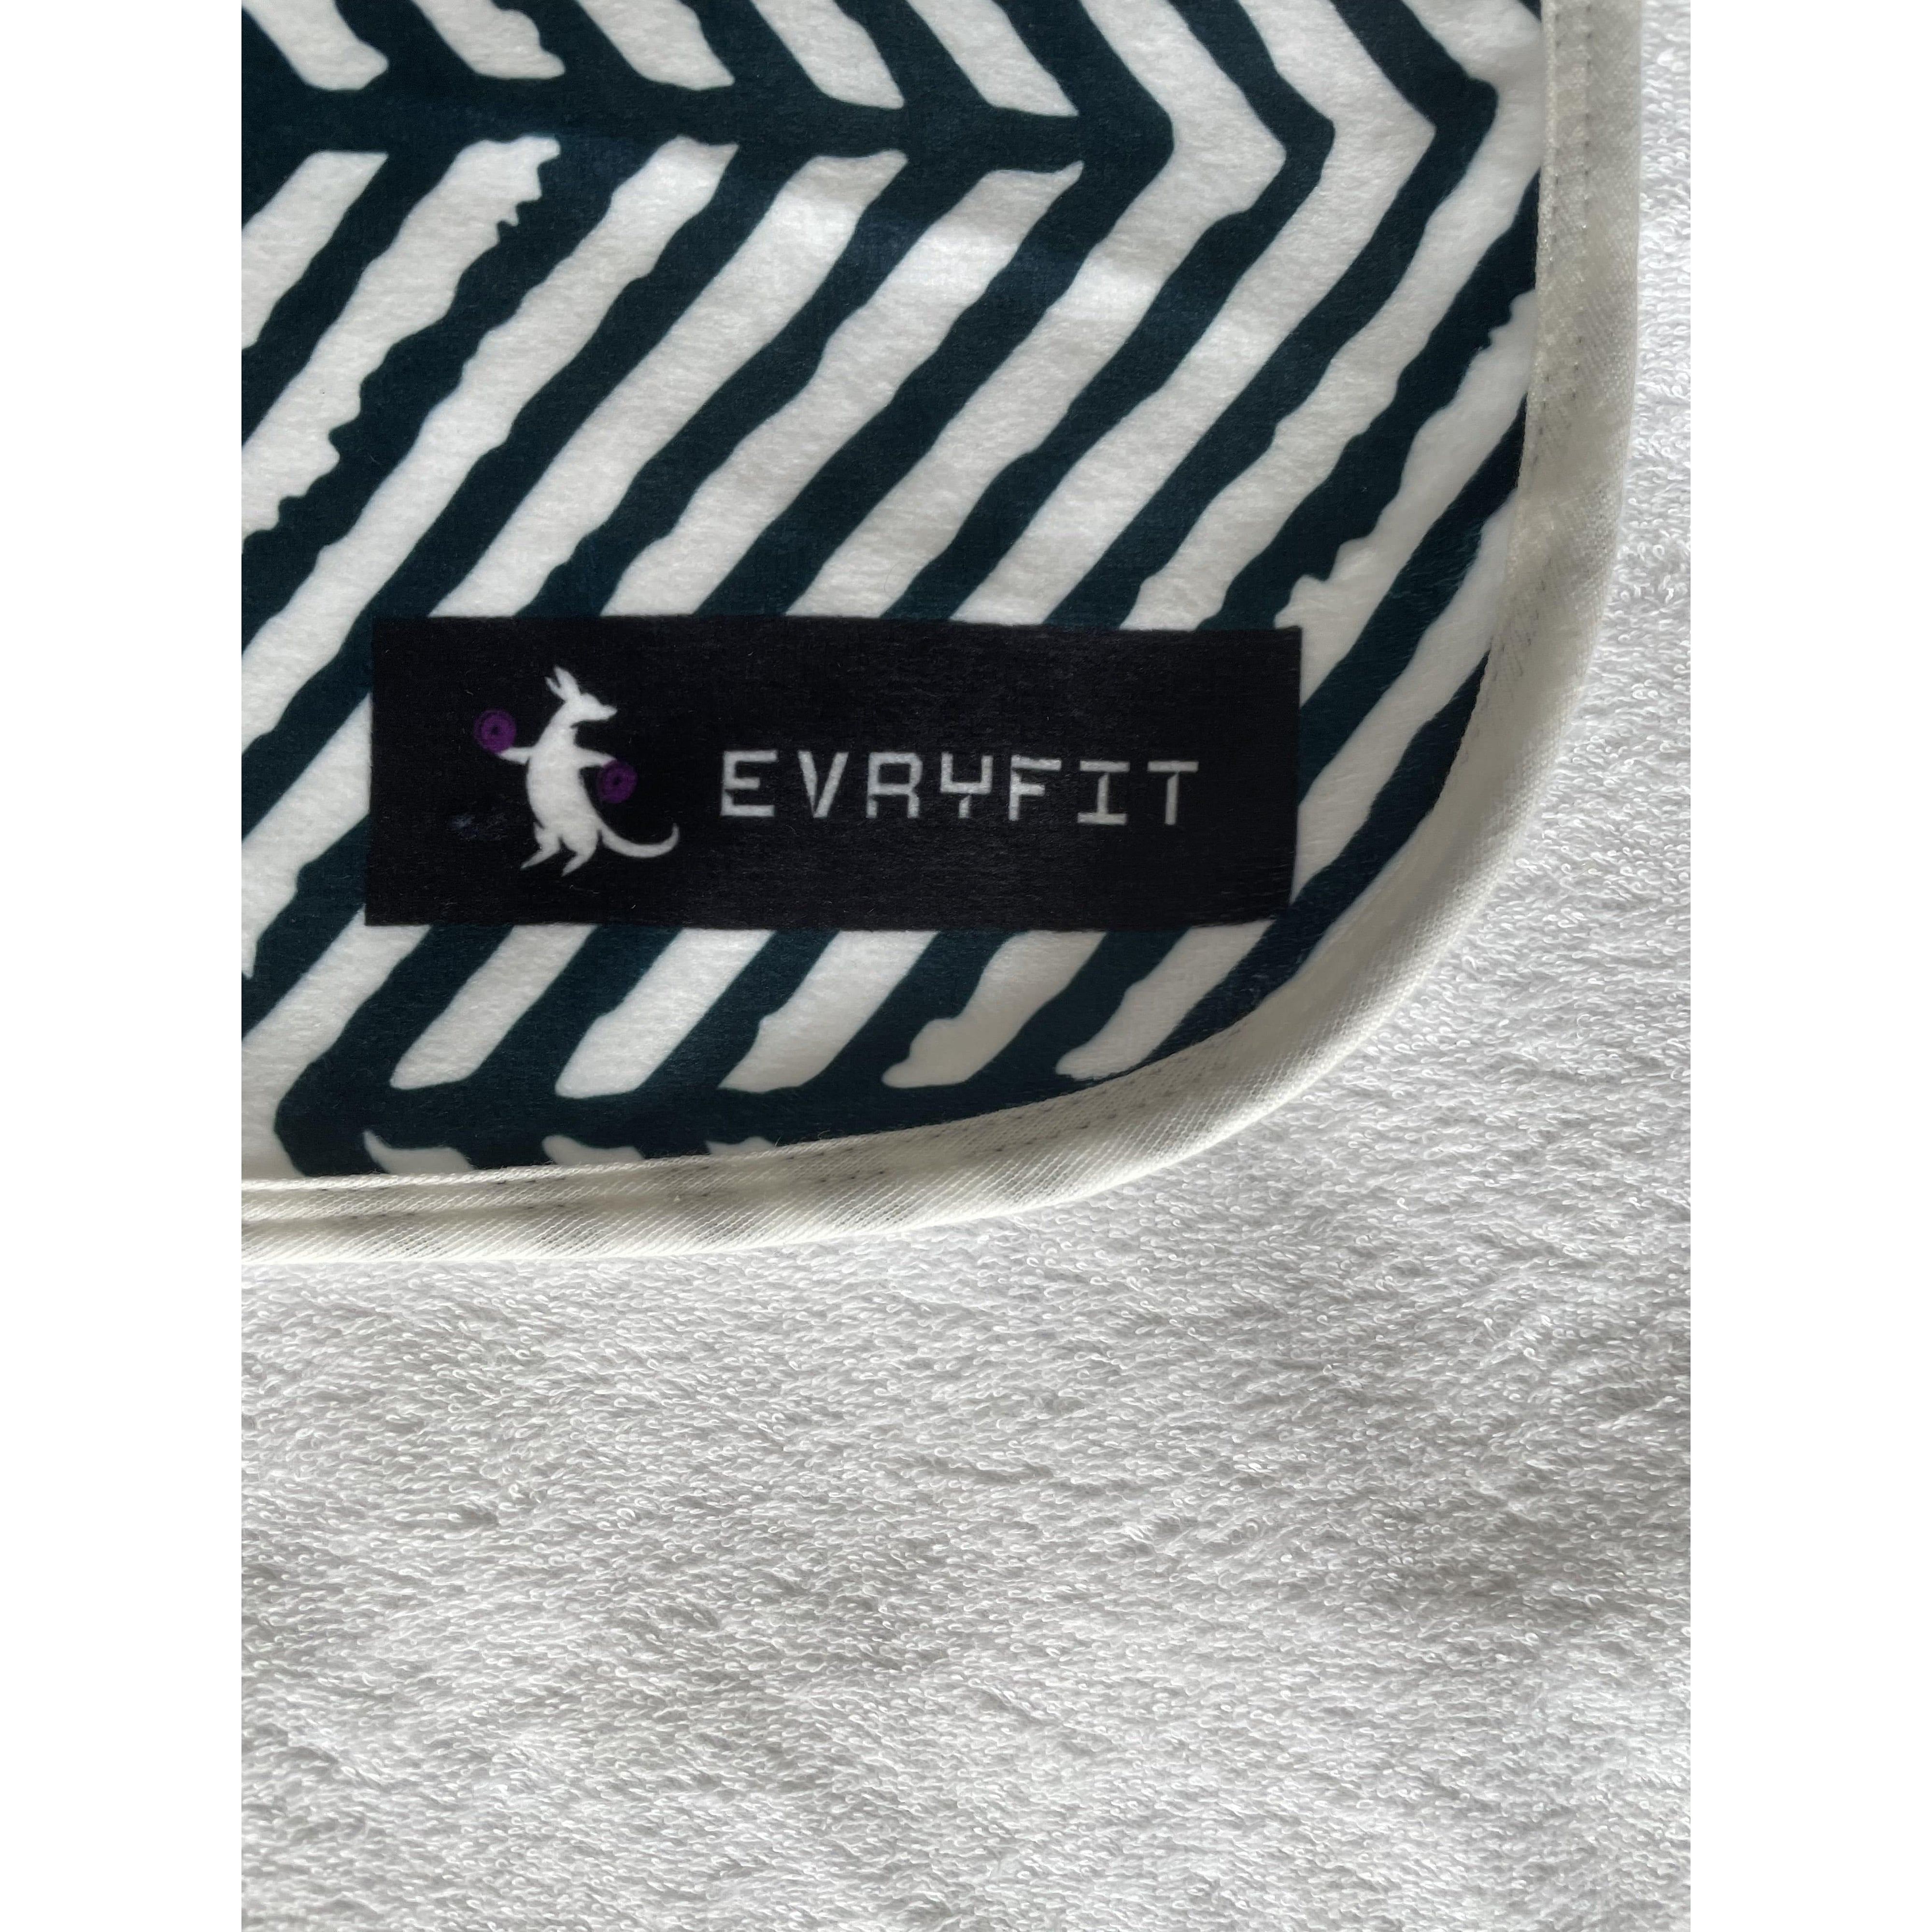 B&W Arrow Hoodel - Hooded Gym Towel - evryfit - bench towel, gym towel, gymtowel, hooded towel, hoodel, magnet towel, towel, towel with pocket